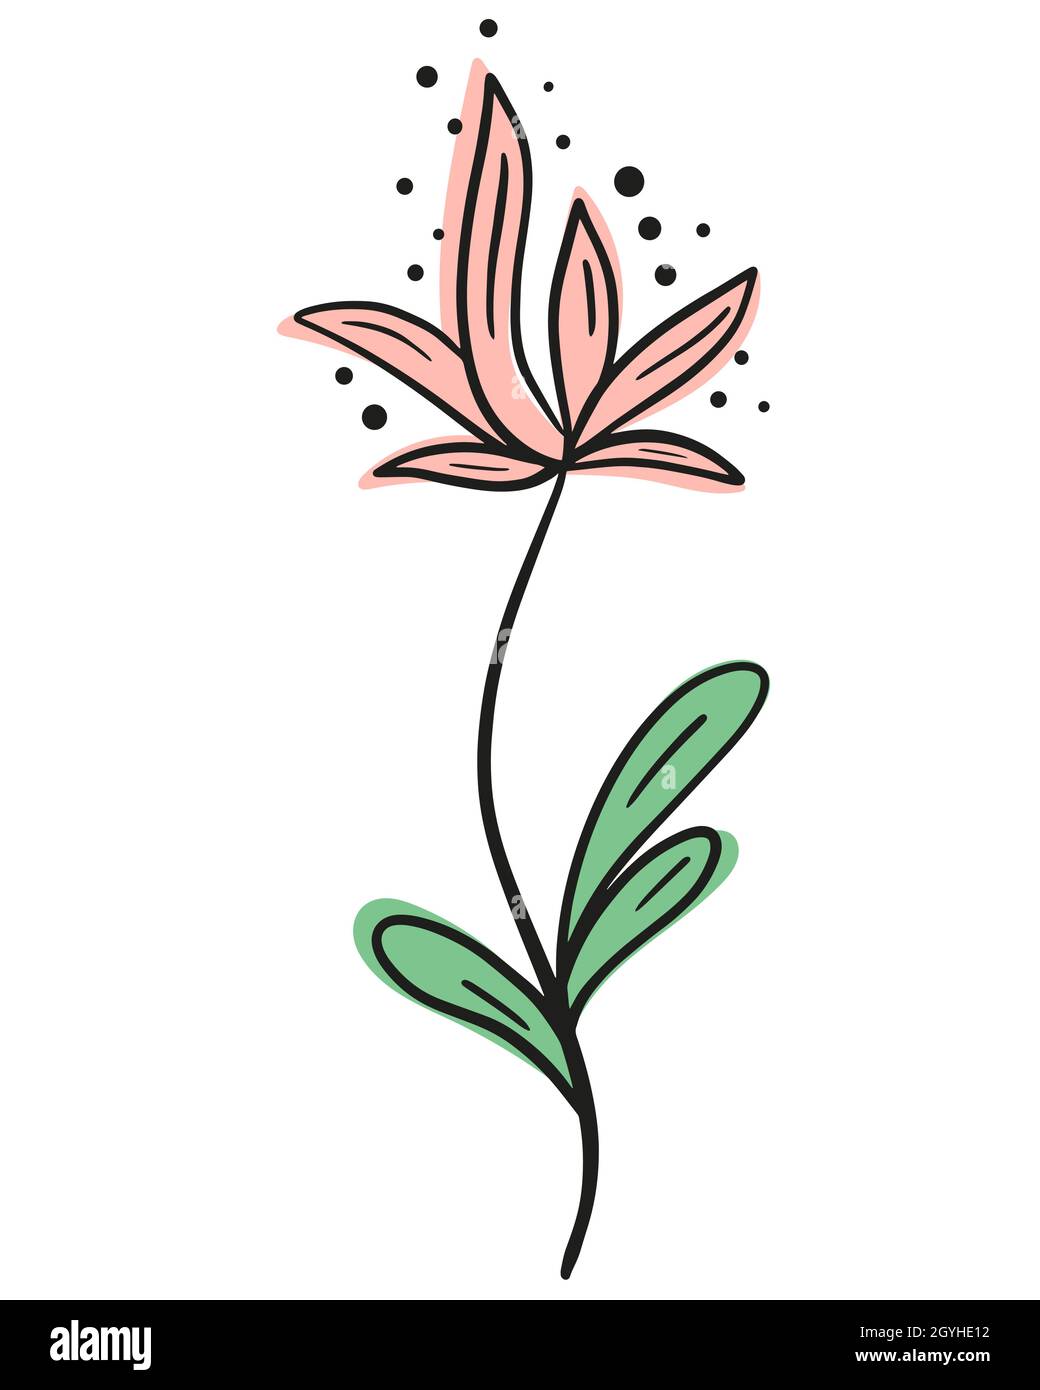 Einzelne schöne Blume Linie Kunst, Vektor-Illustration. Handgefertigtes Konturbild einer eleganten blühenden Blume. Schwarze Umrisse und farbige Flecken, botanica Stock Vektor